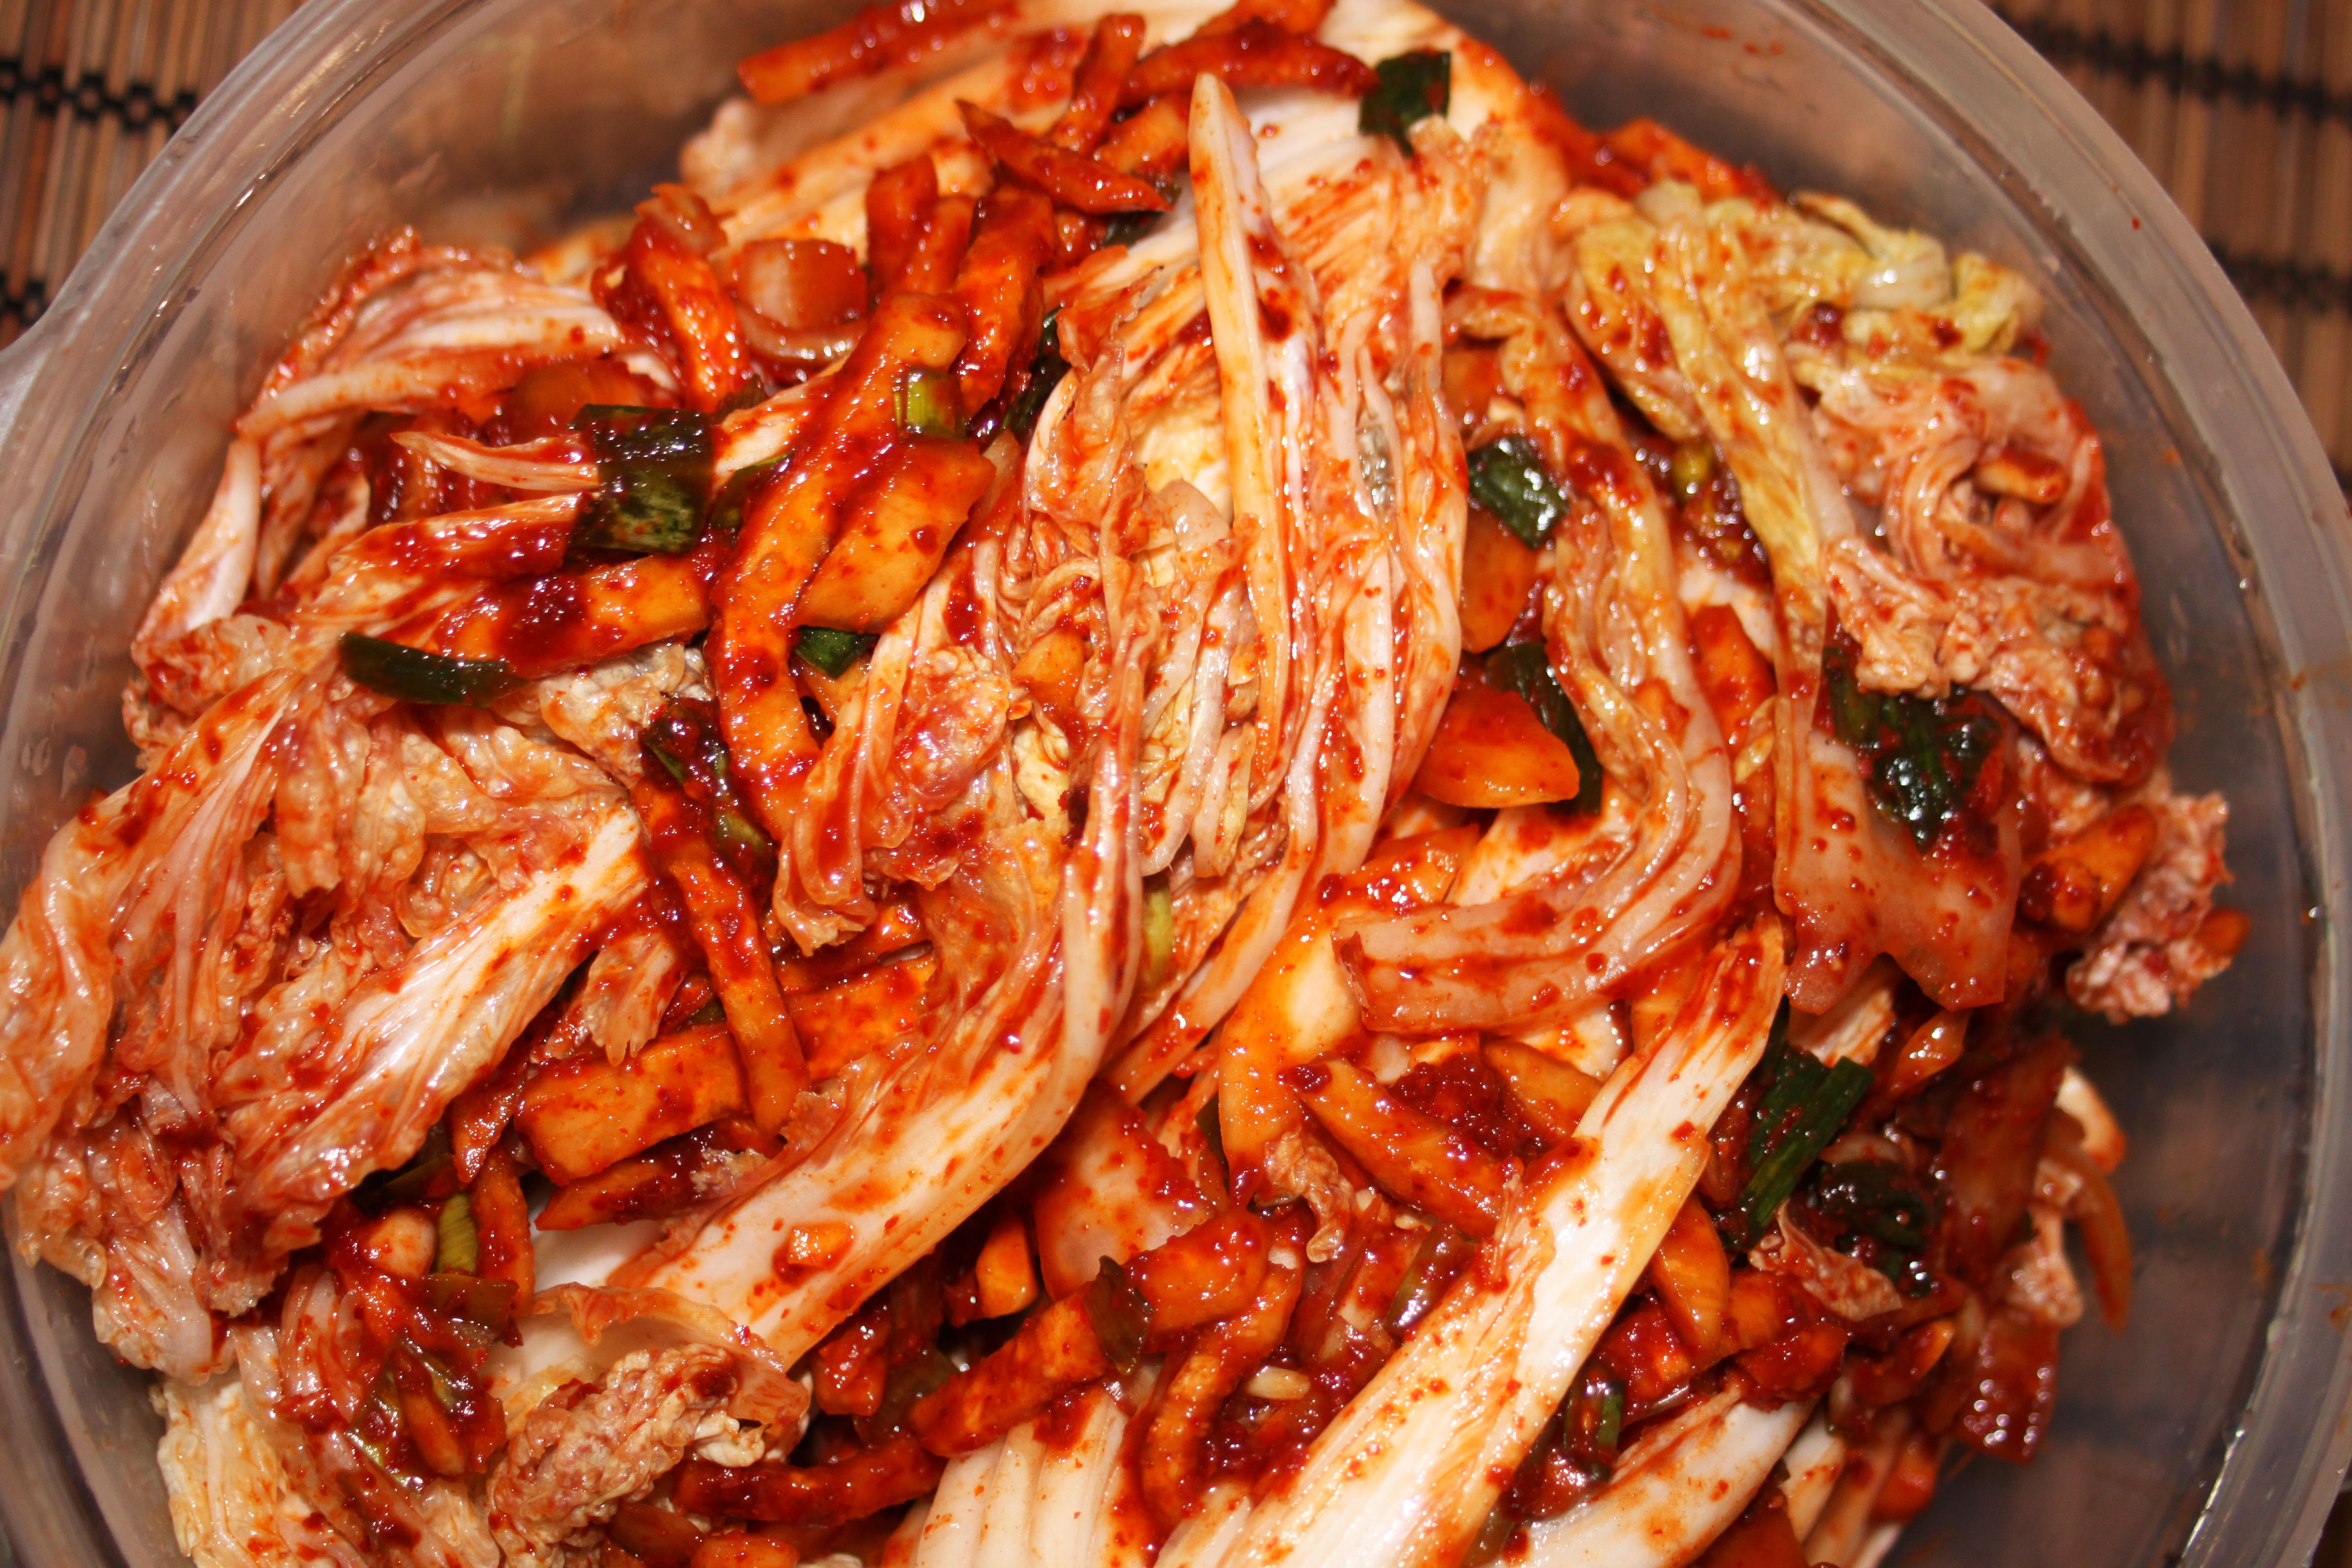 Cuisine Coréenne, la recette du Kimchi (김치)